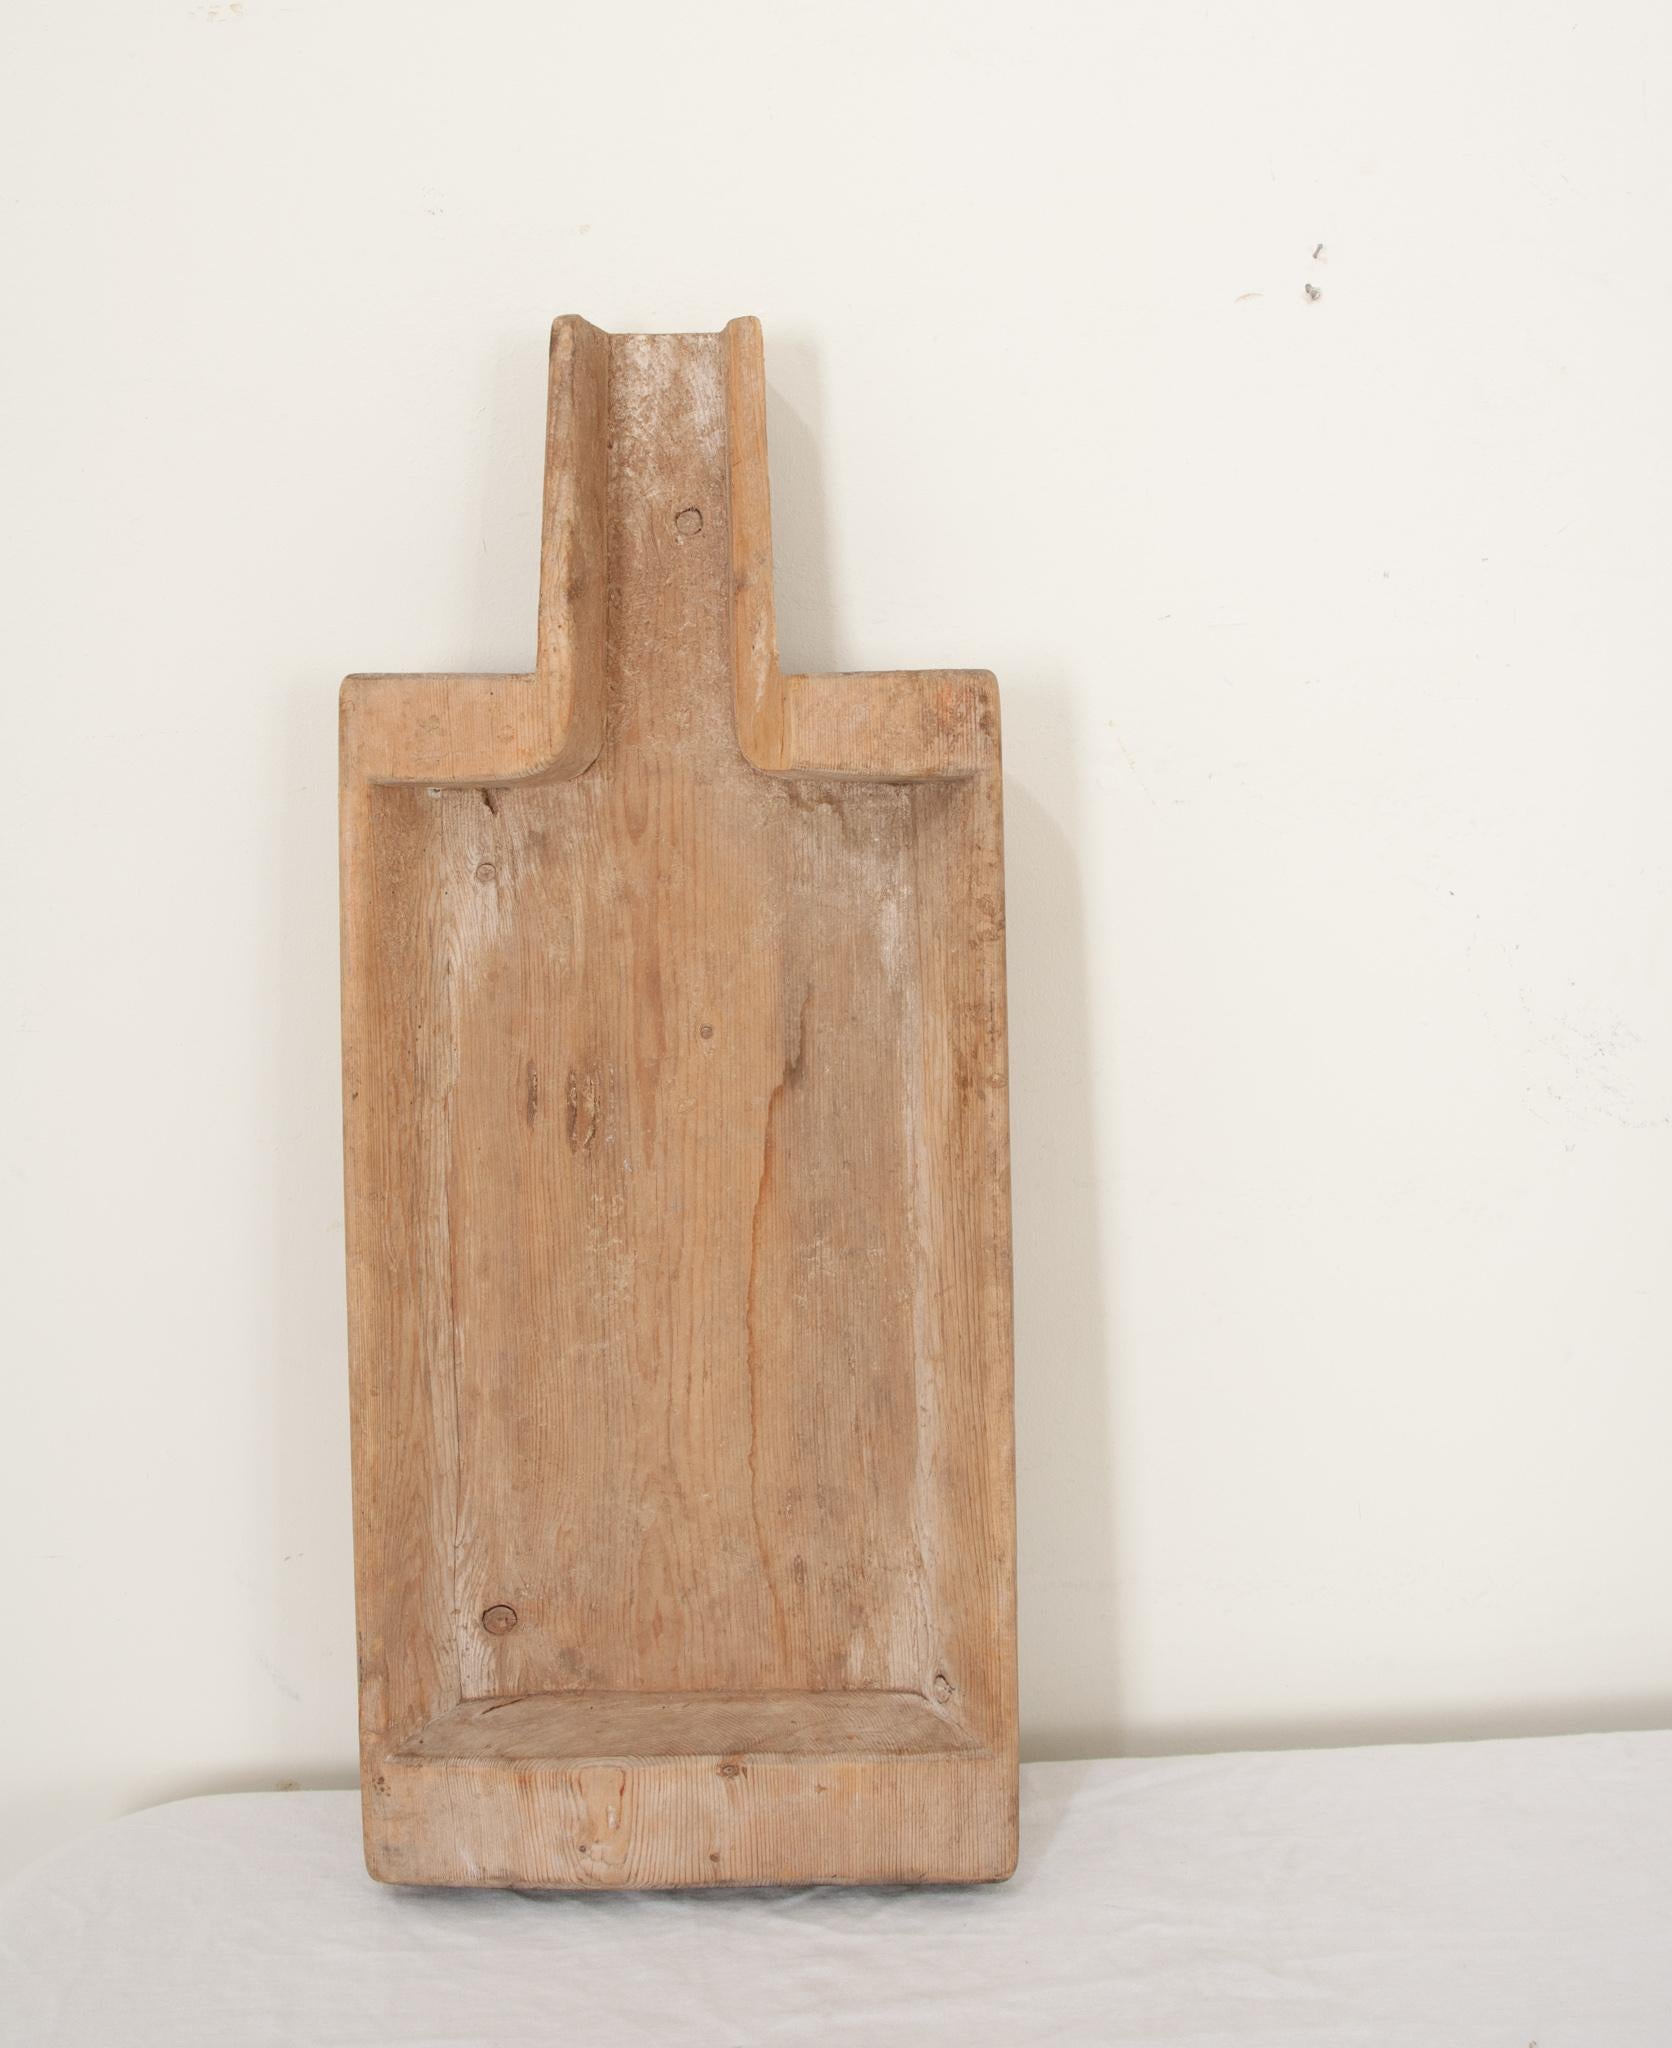 Ein skandinavisches Käsebrett aus dem 19. Jahrhundert, handgefertigt aus massivem Holz, um 1879. Ursprünglich und rustikal, diese rechteckige ausgehöhlt,  Ein schaufelförmiges Brett diente zum Abtropfen und Trennen von Käse und Molke. Hergestellt